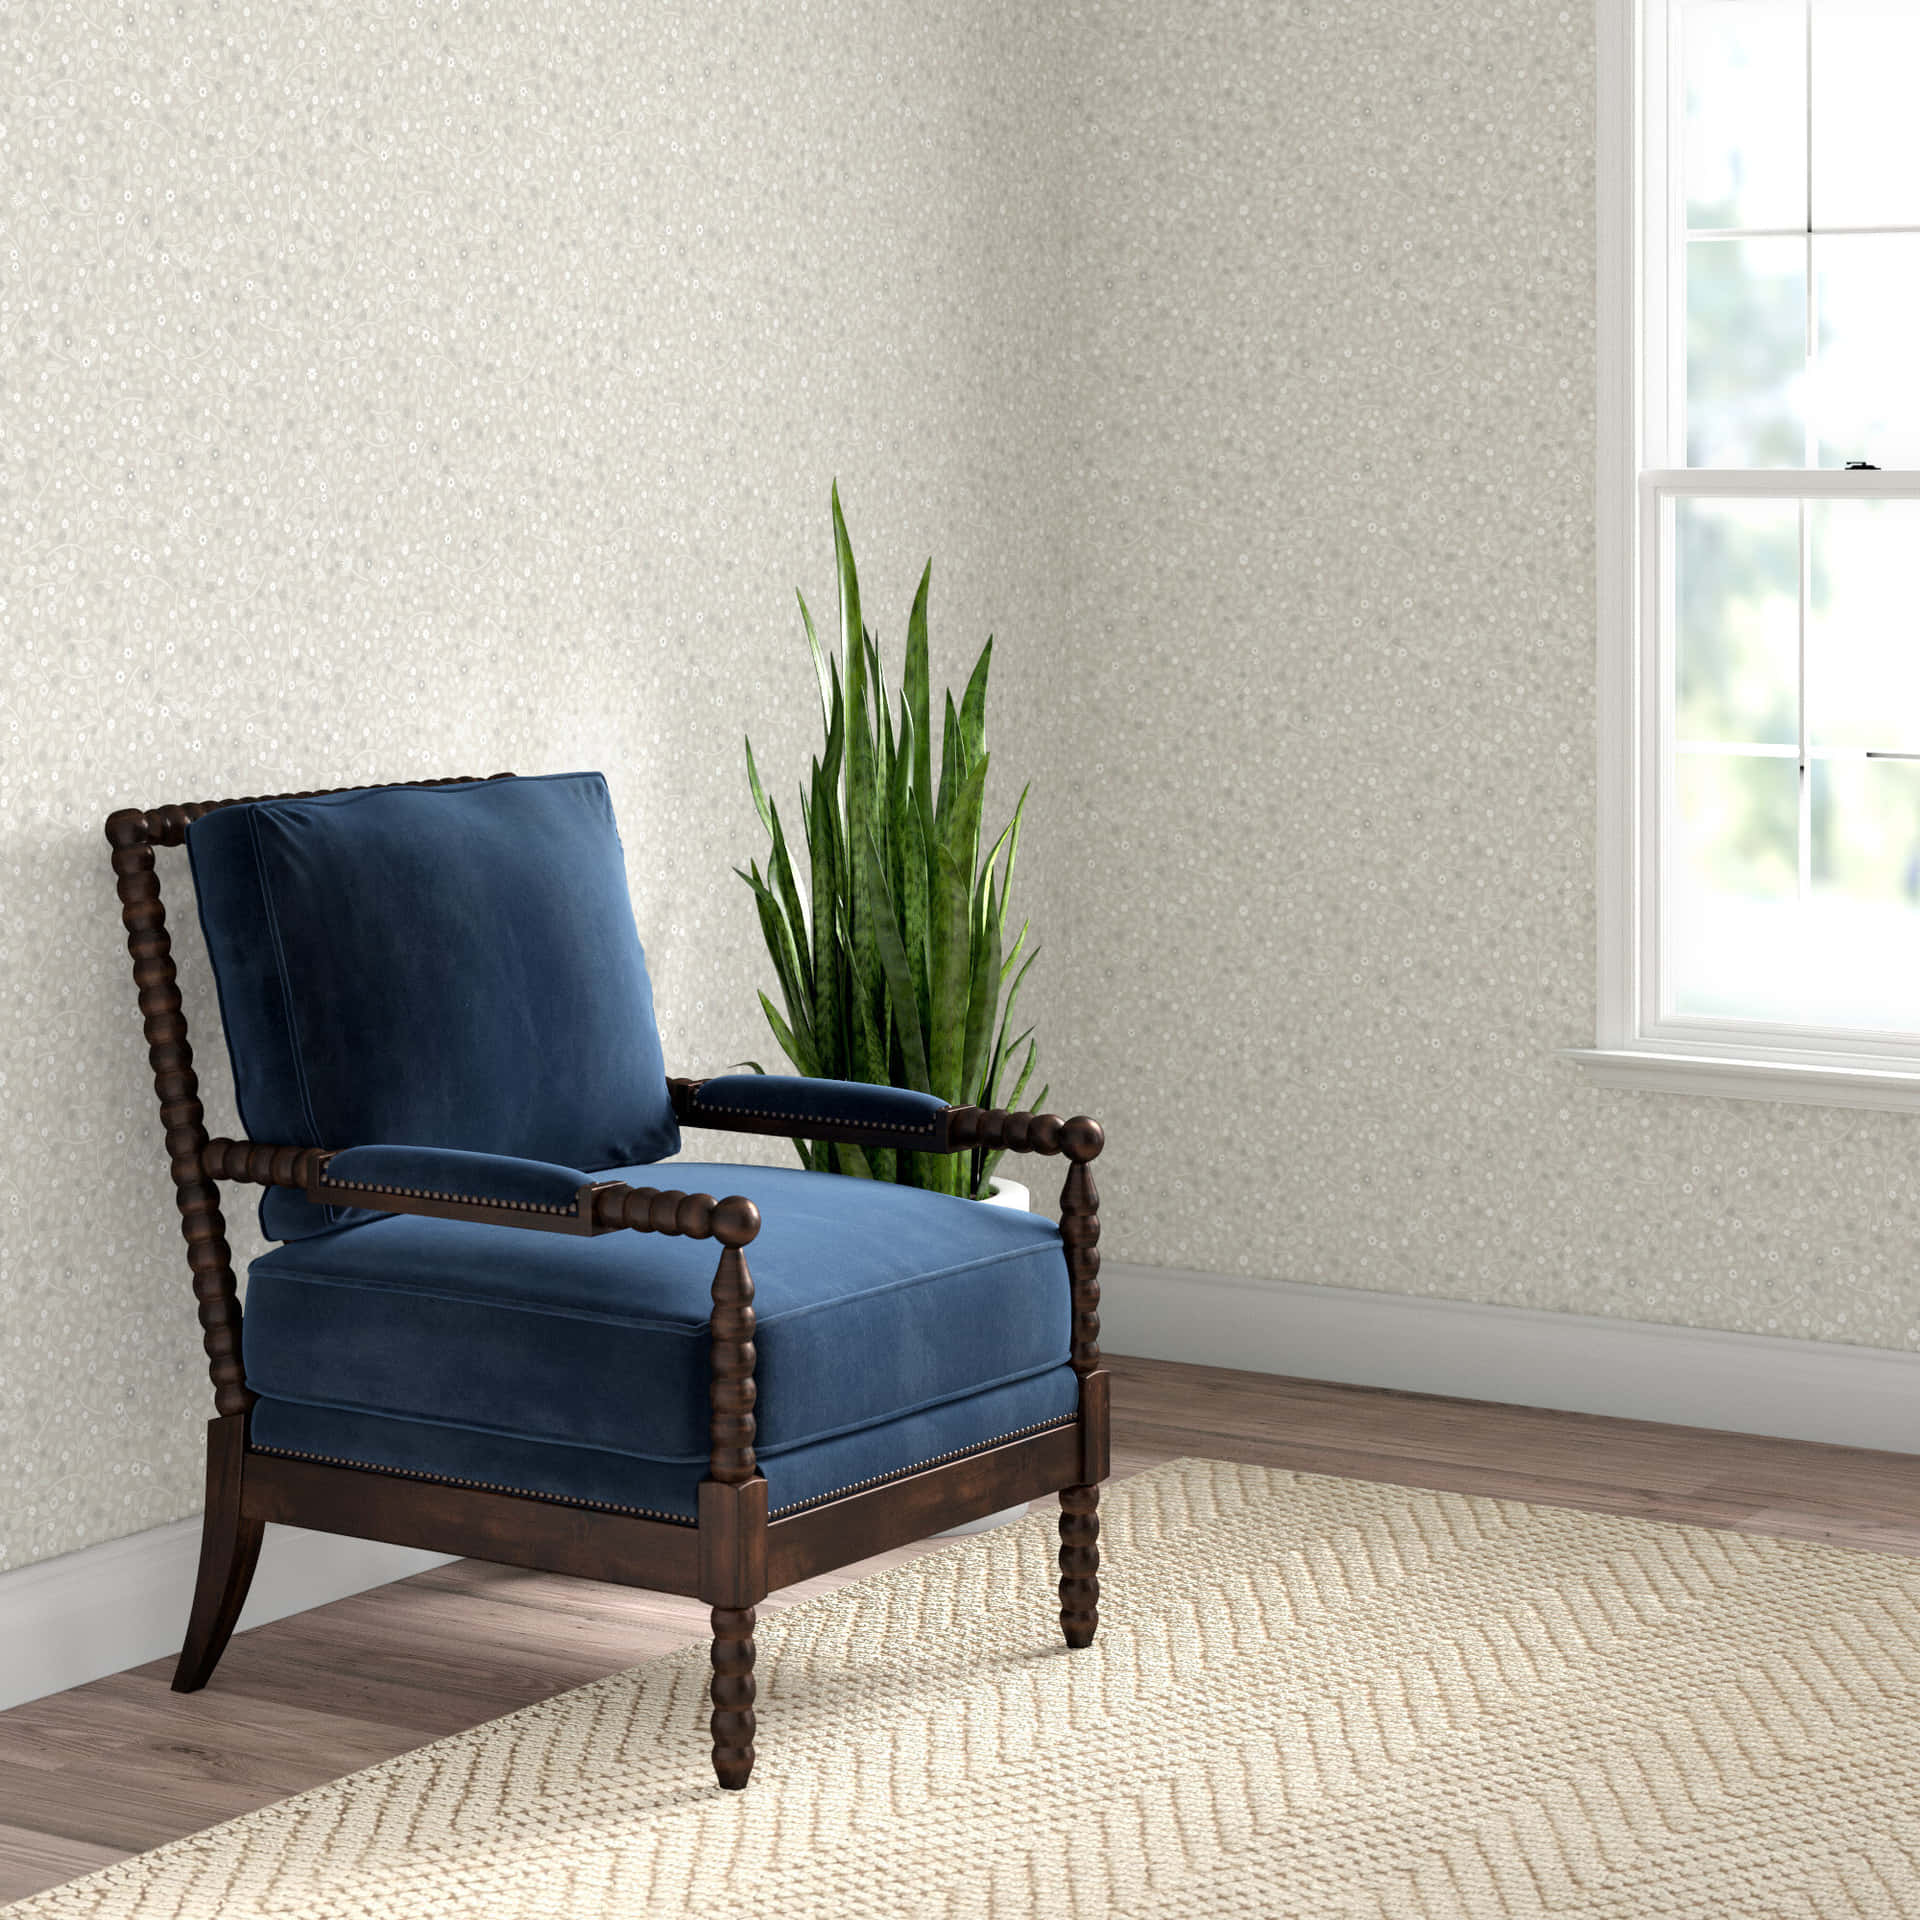 Diminutive Furniture Wallpaper